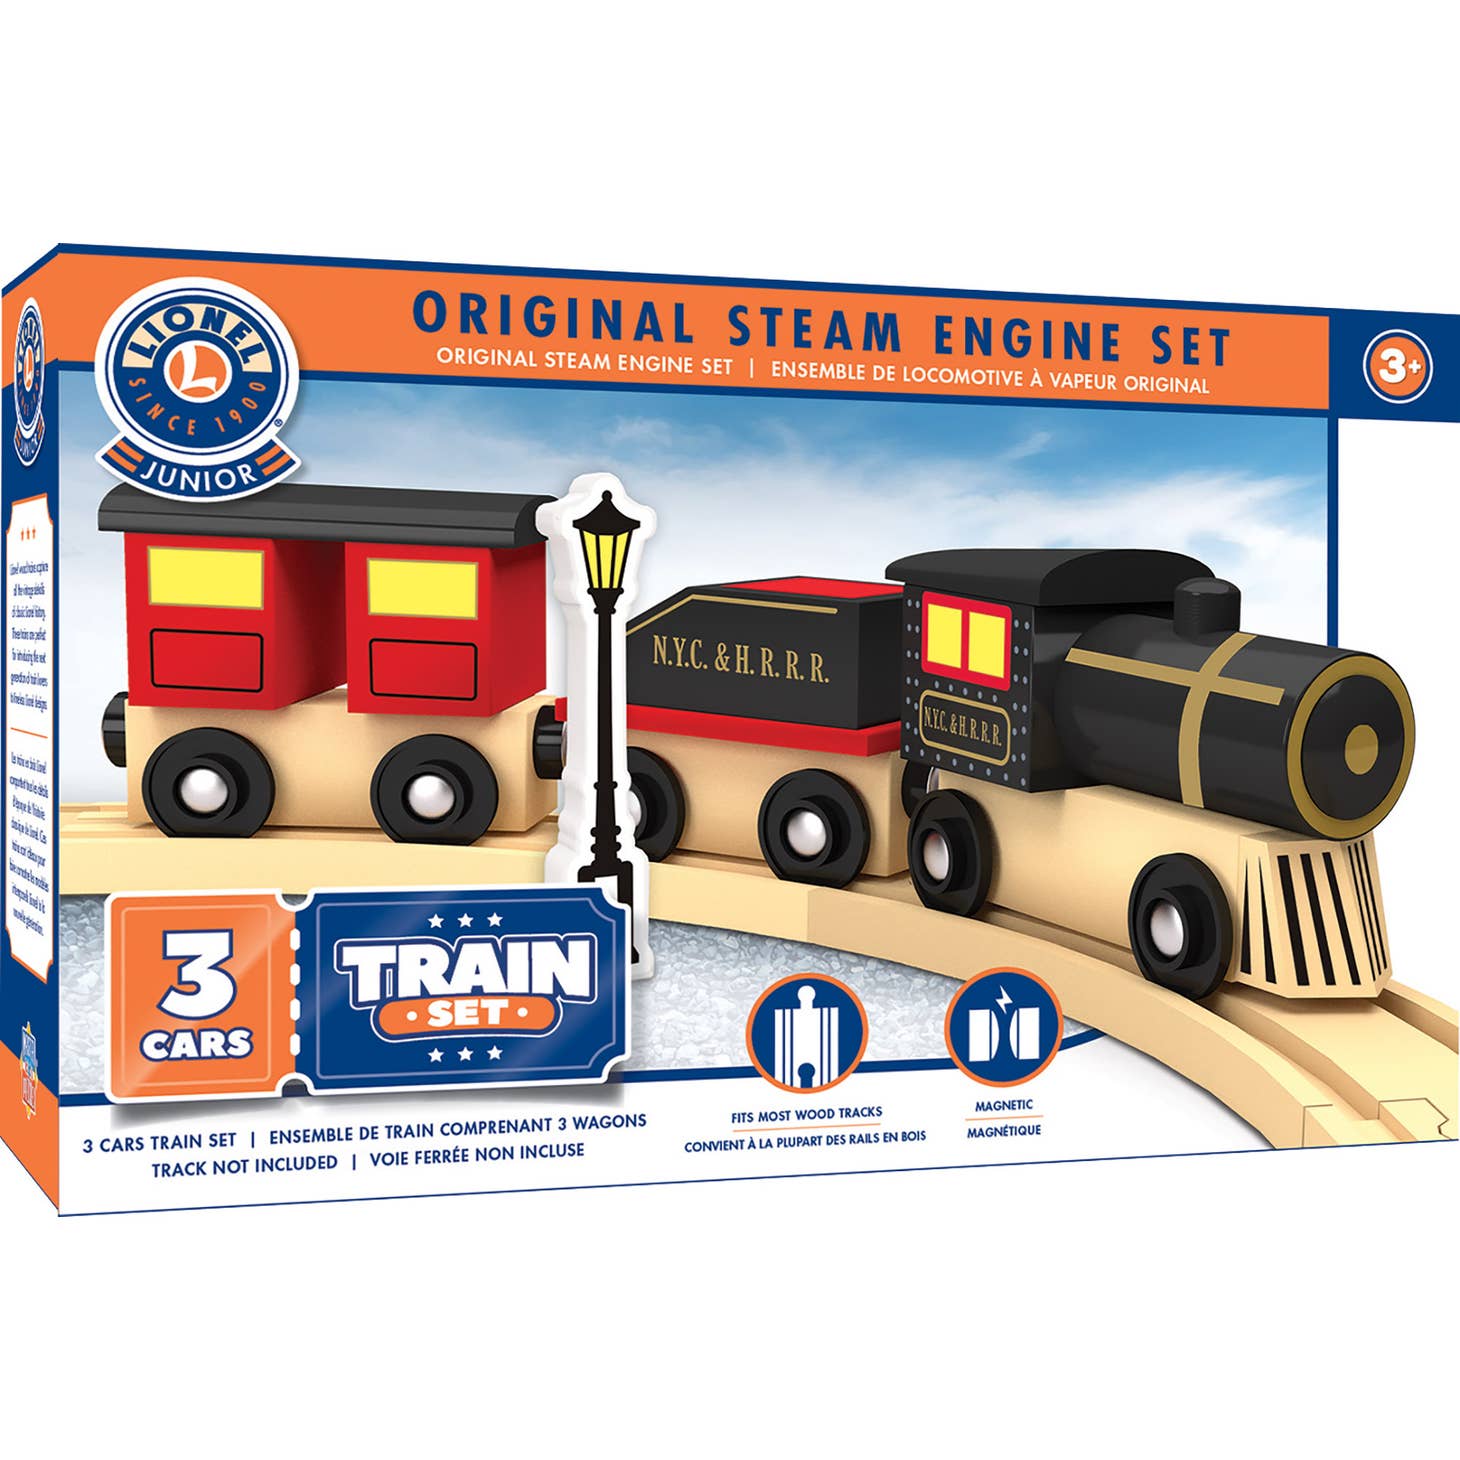 42016 Lionel - Original Steam Engine Toy Train Set